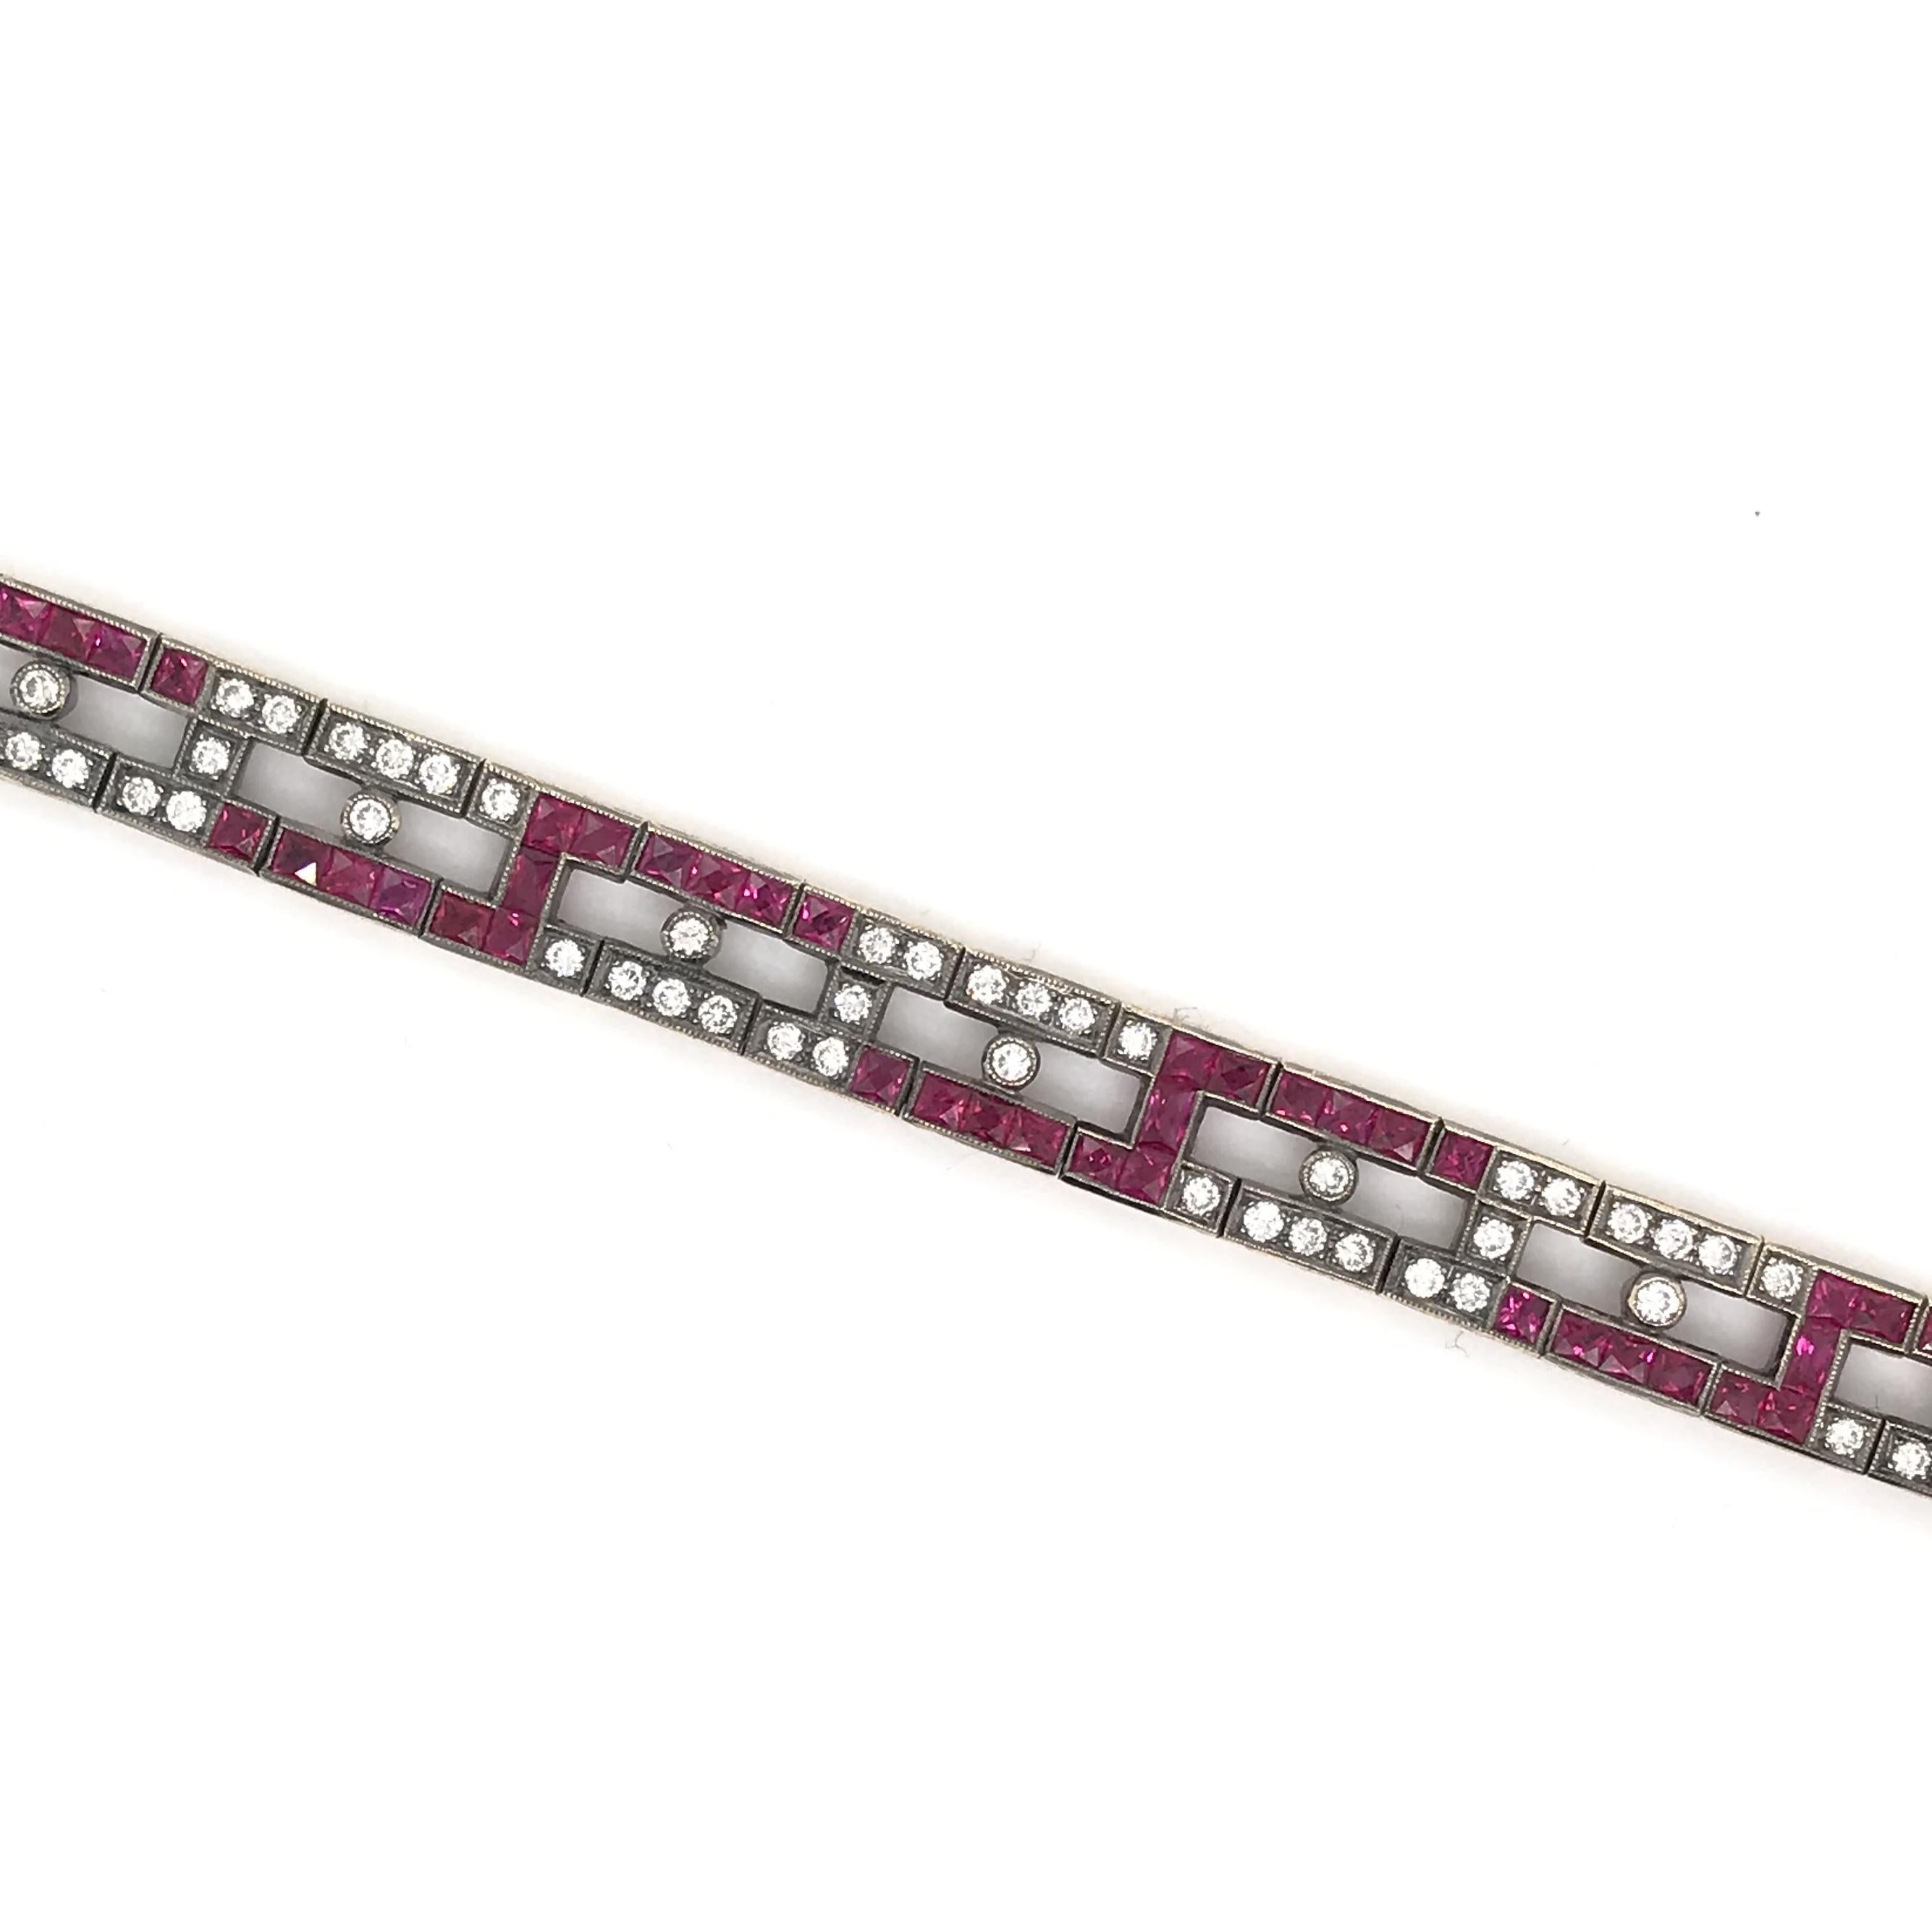 Dieses moderne Rubin- und Diamantarmband besteht aus ca. 4 Karat Rubinen und 1,50 Karat Diamanten. Das Motiv ist mit seinen klaren Linien, den Rubinen im französischen Schliff und dem geometrischen Design eindeutig vom Deco inspiriert. Das Armband